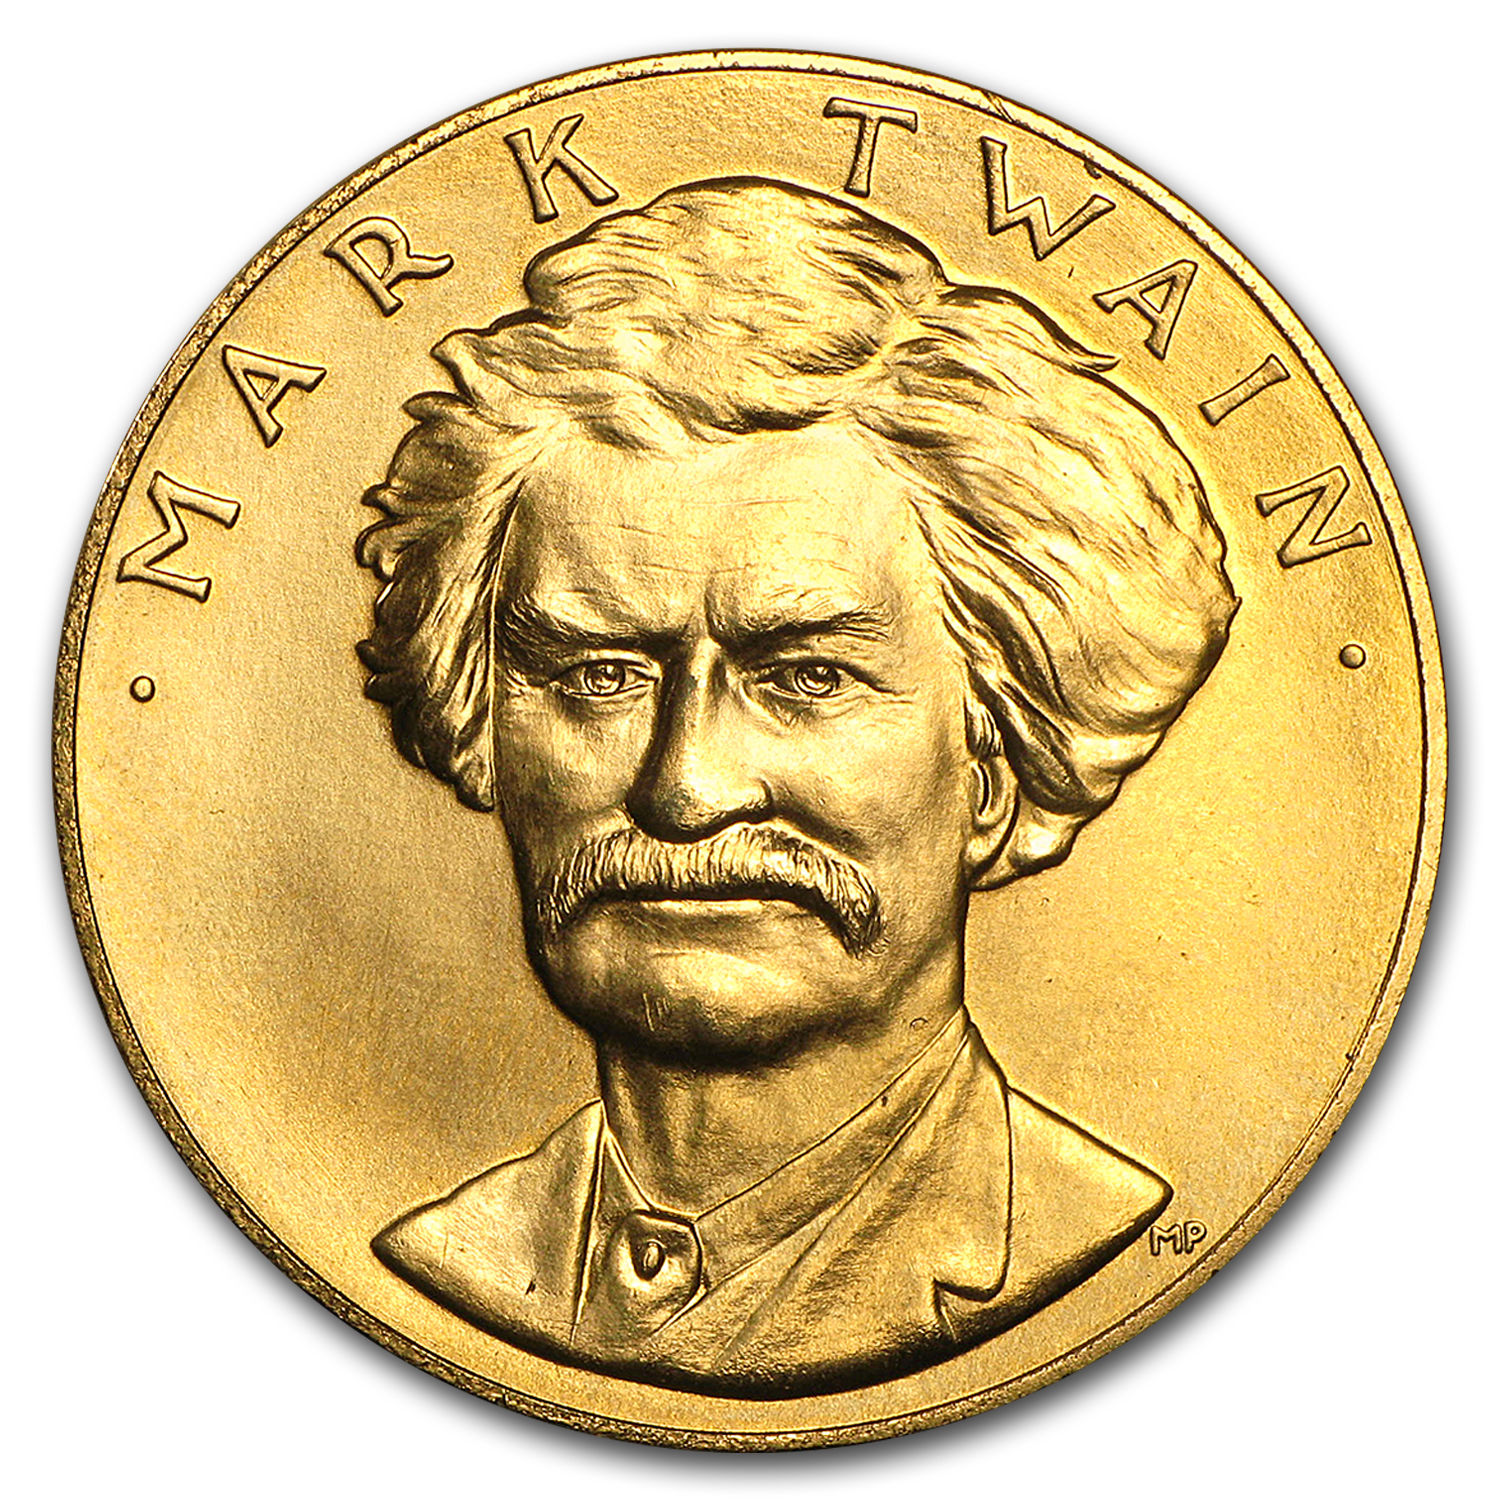 U.S. Mint 1 oz Gold Commemorative Arts Medal Mark Twain - SKU #14479